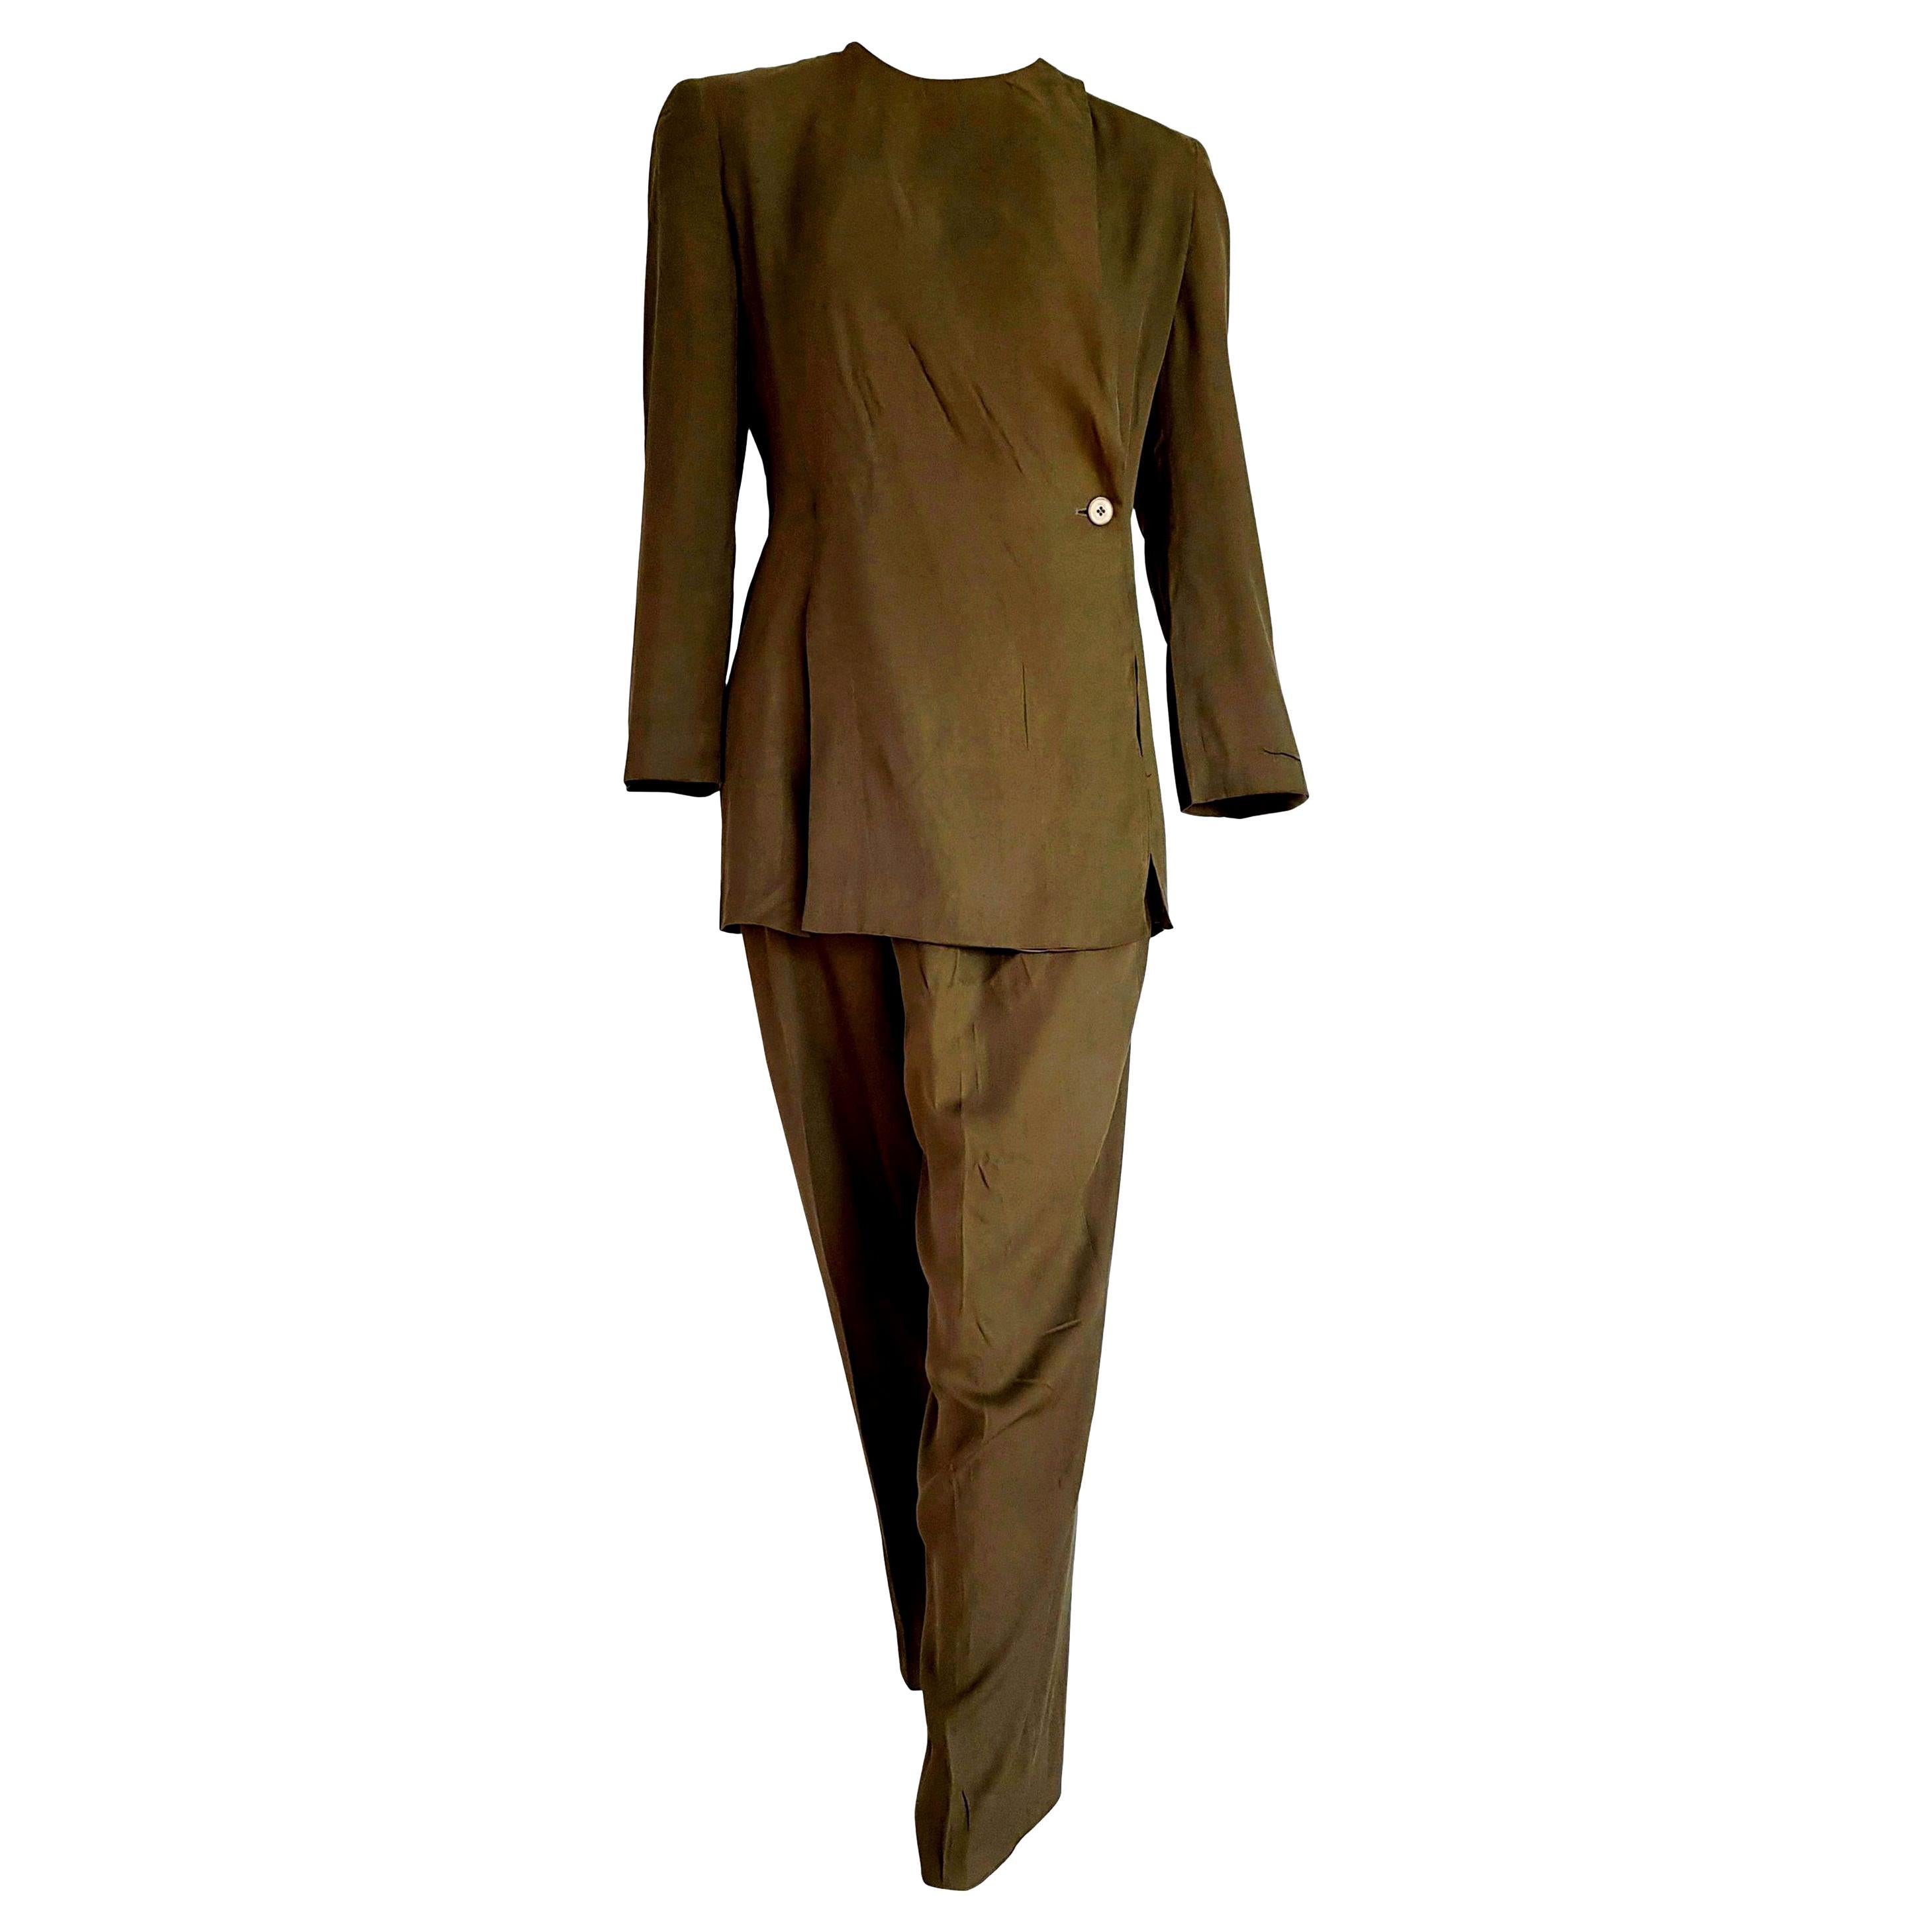 Giorgio ARMANI "New" Green Silk 1 button Closed collar Trousers Suit - Unworn For Sale